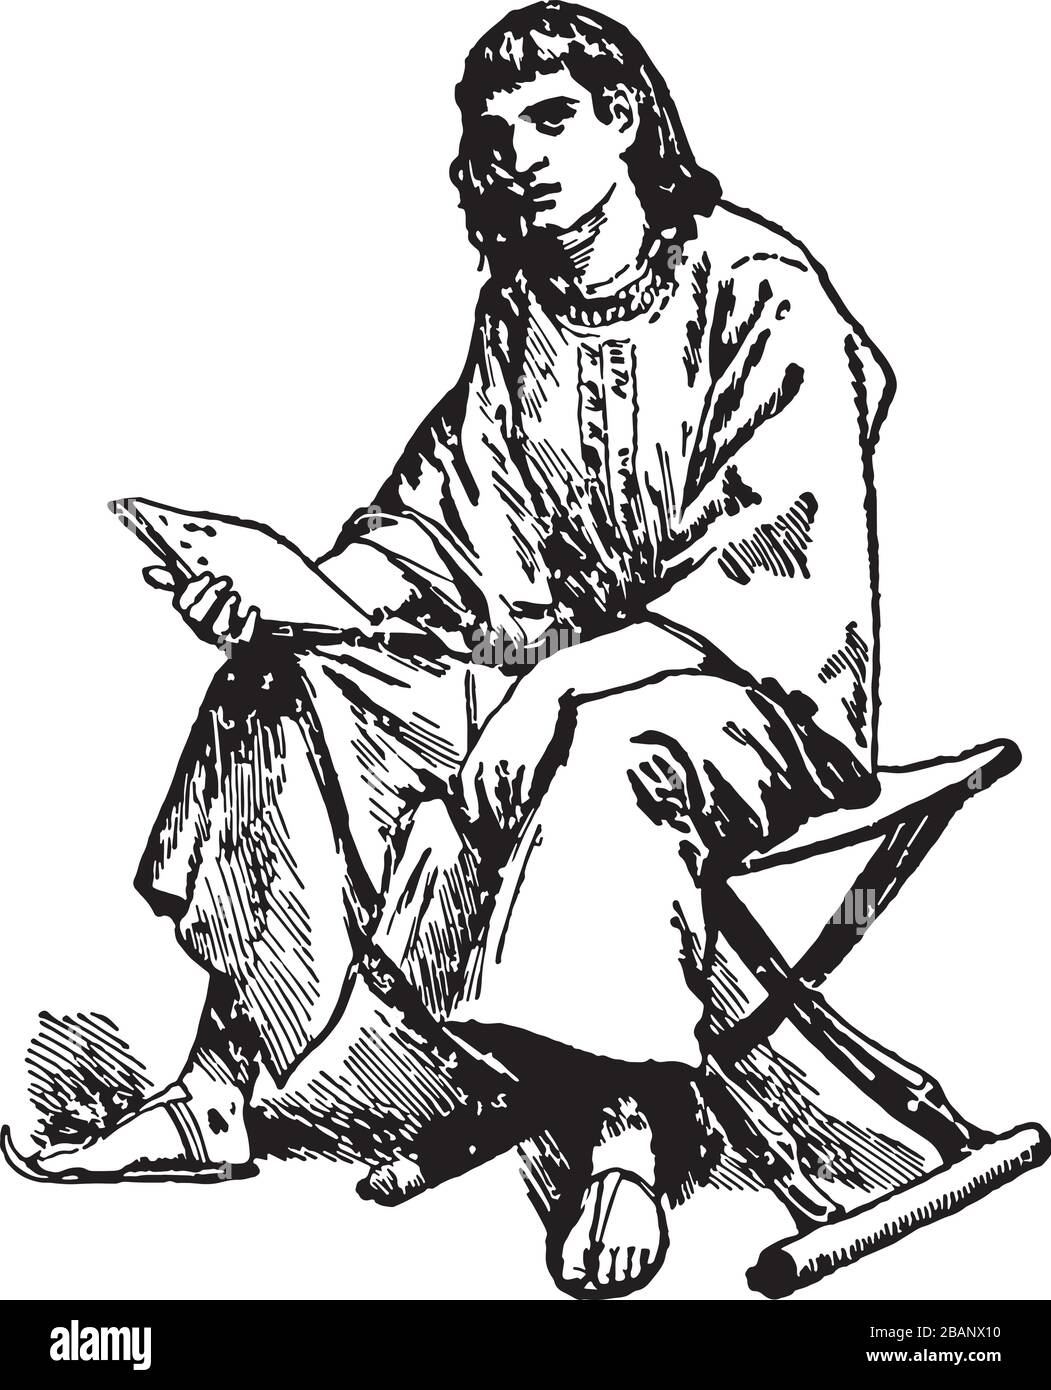 Student Scribe sitzt auf einem Hocker Vintage Line Art Illustration Stock Vektor